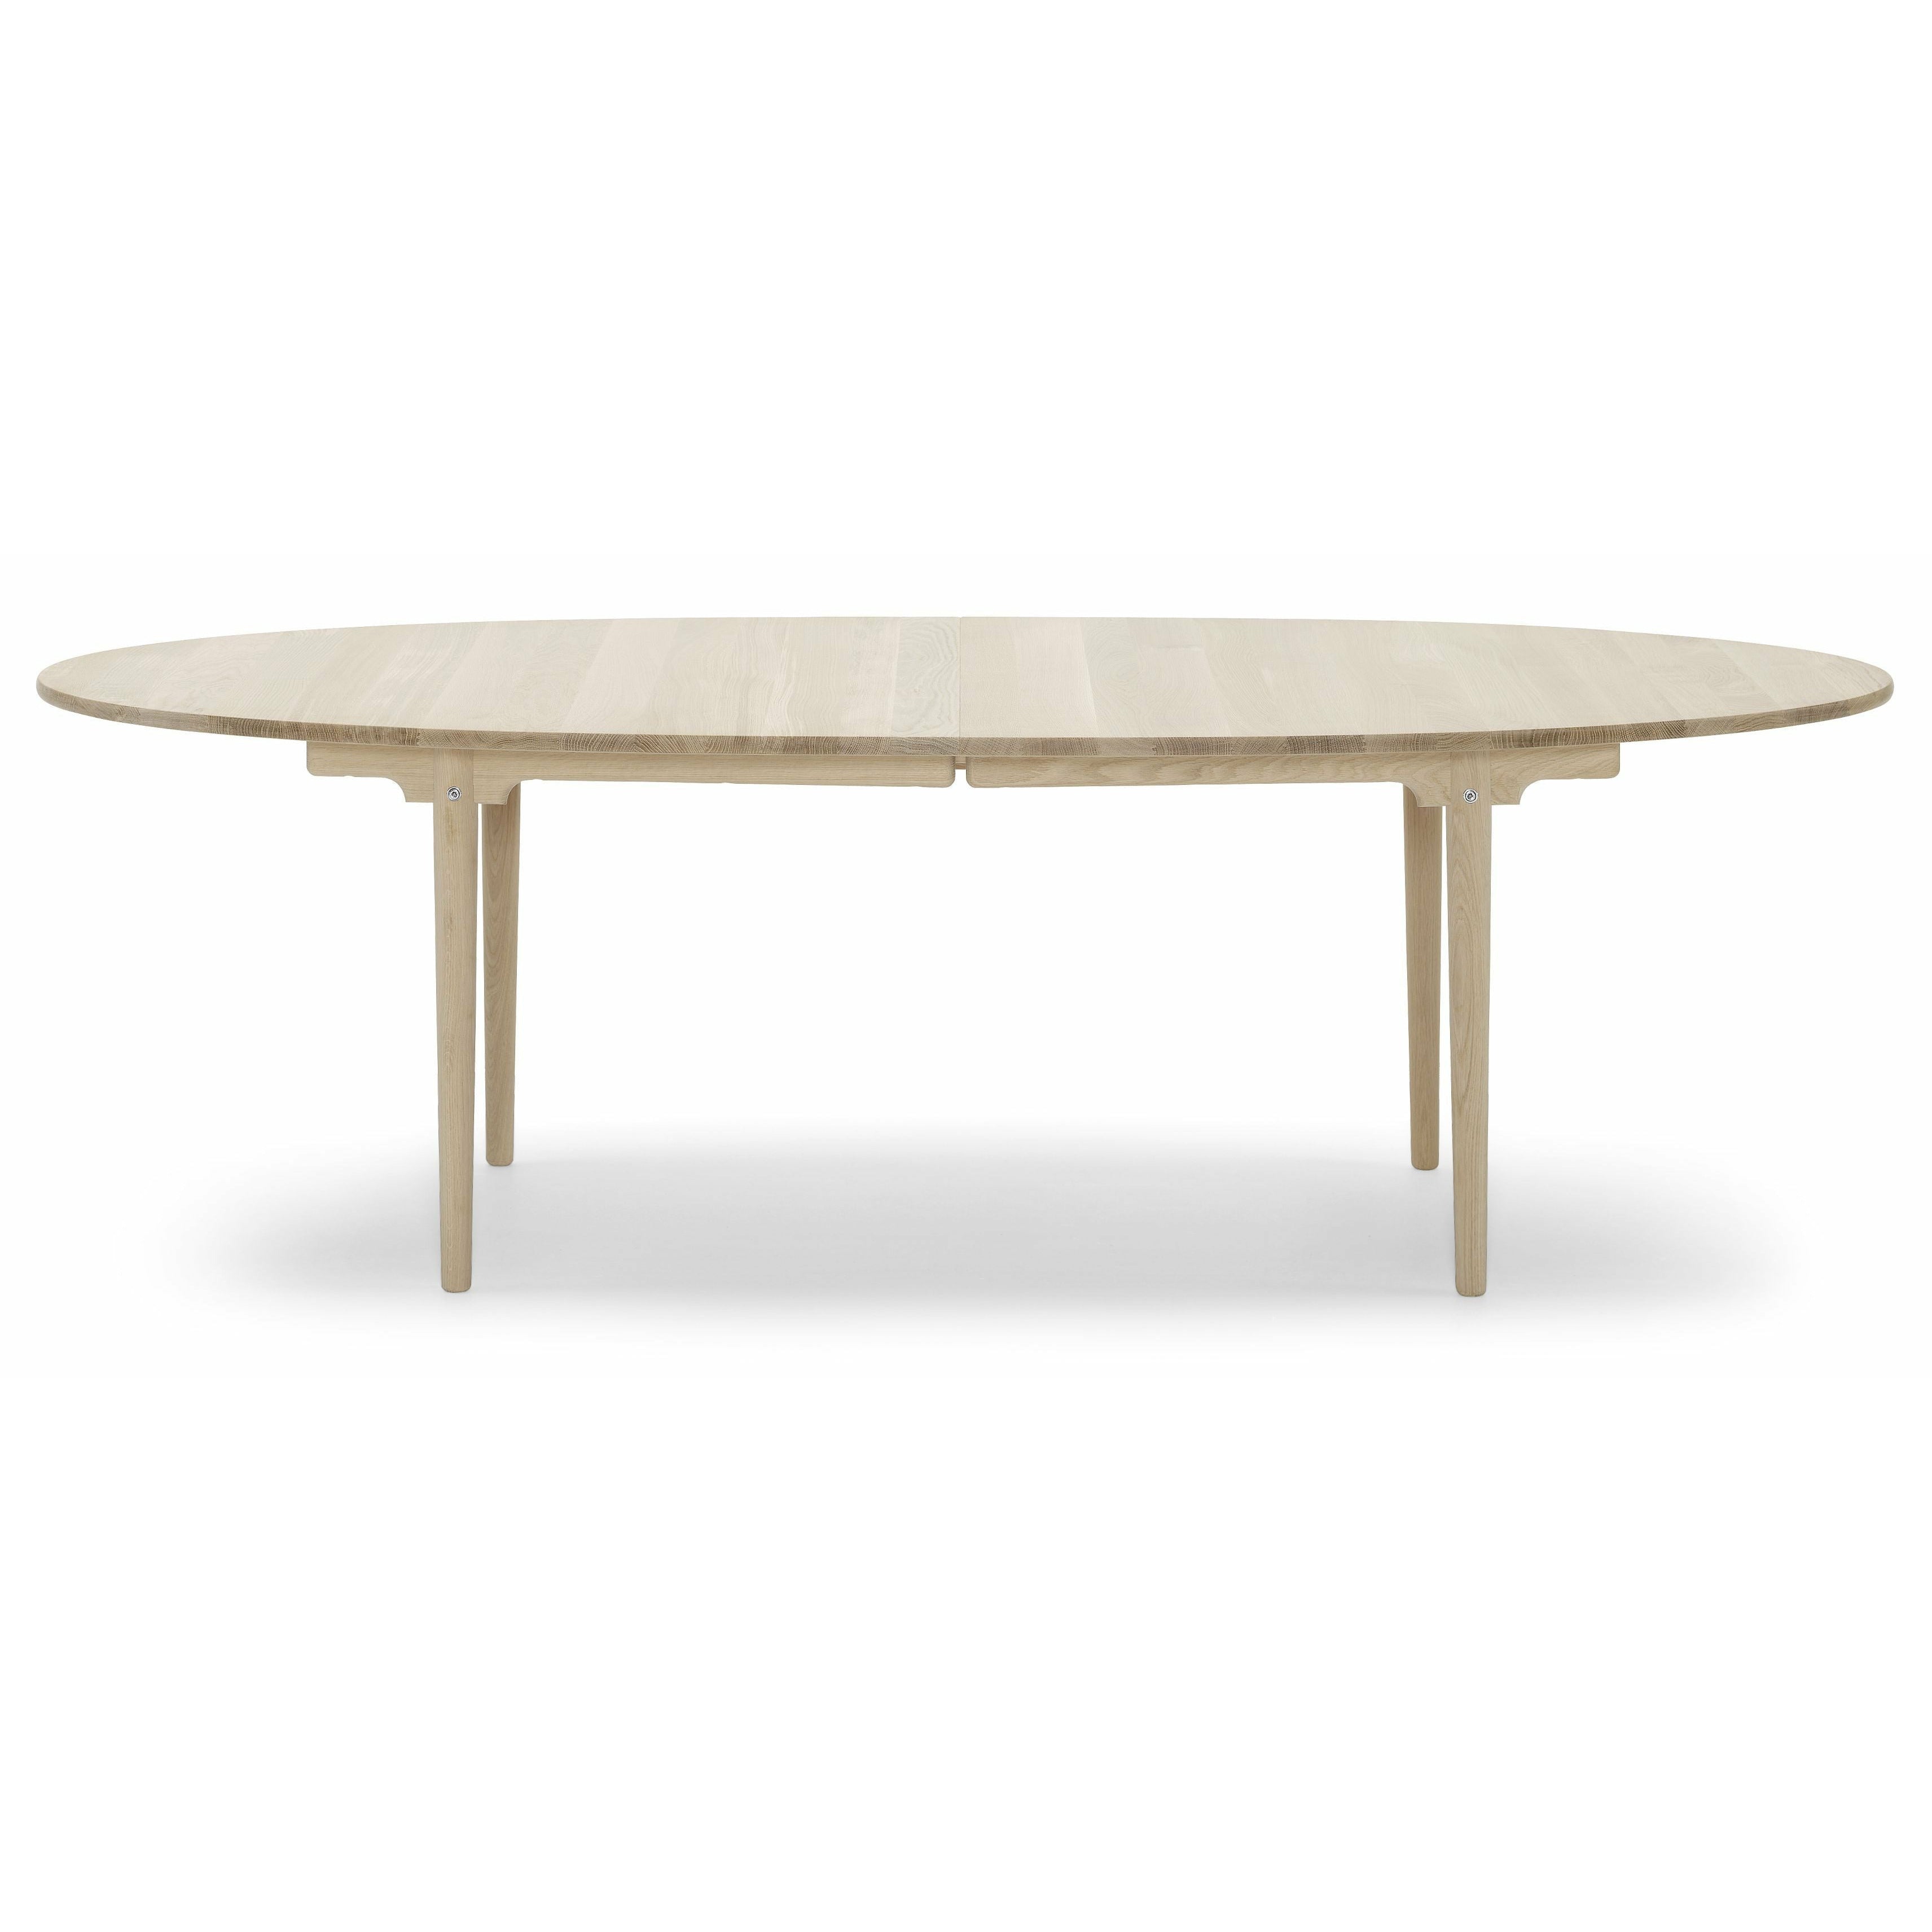 Carl Hansen CH339 matbord designat för 2 utdragbara plattor, tvålad ek